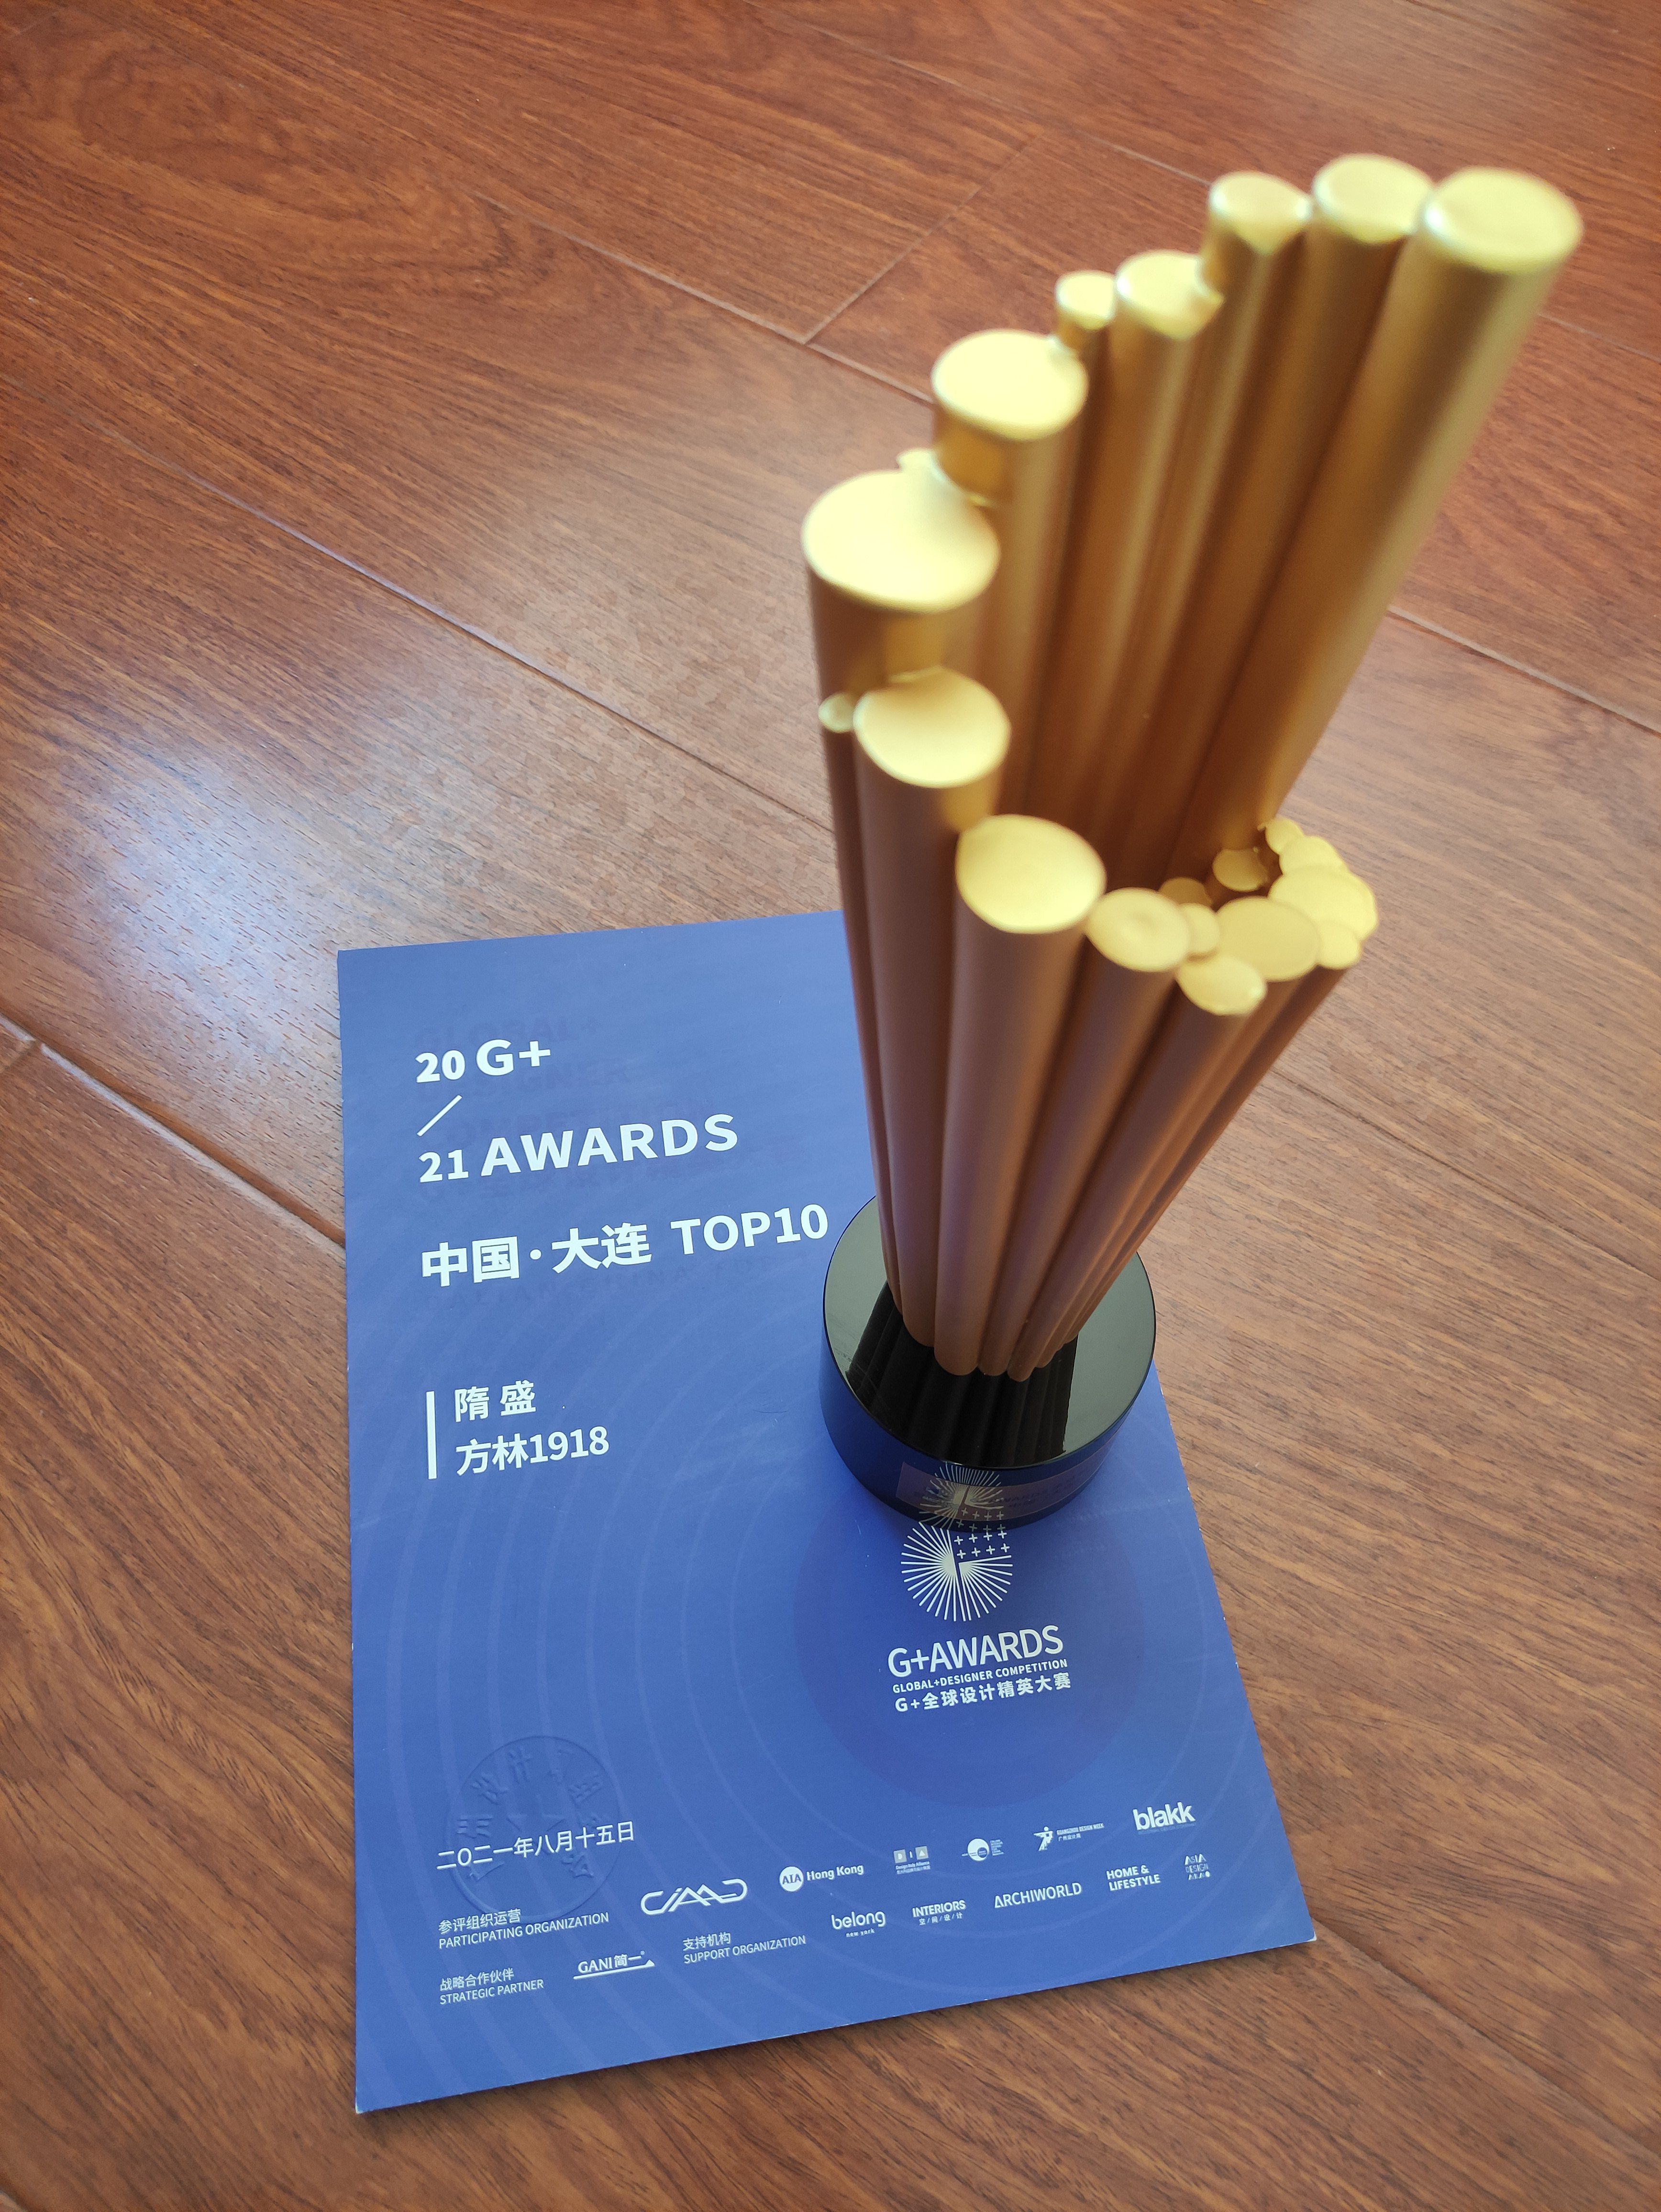 设计师隋盛斩获G+AWARDS全球设计精英大赛奖「Talk设计」